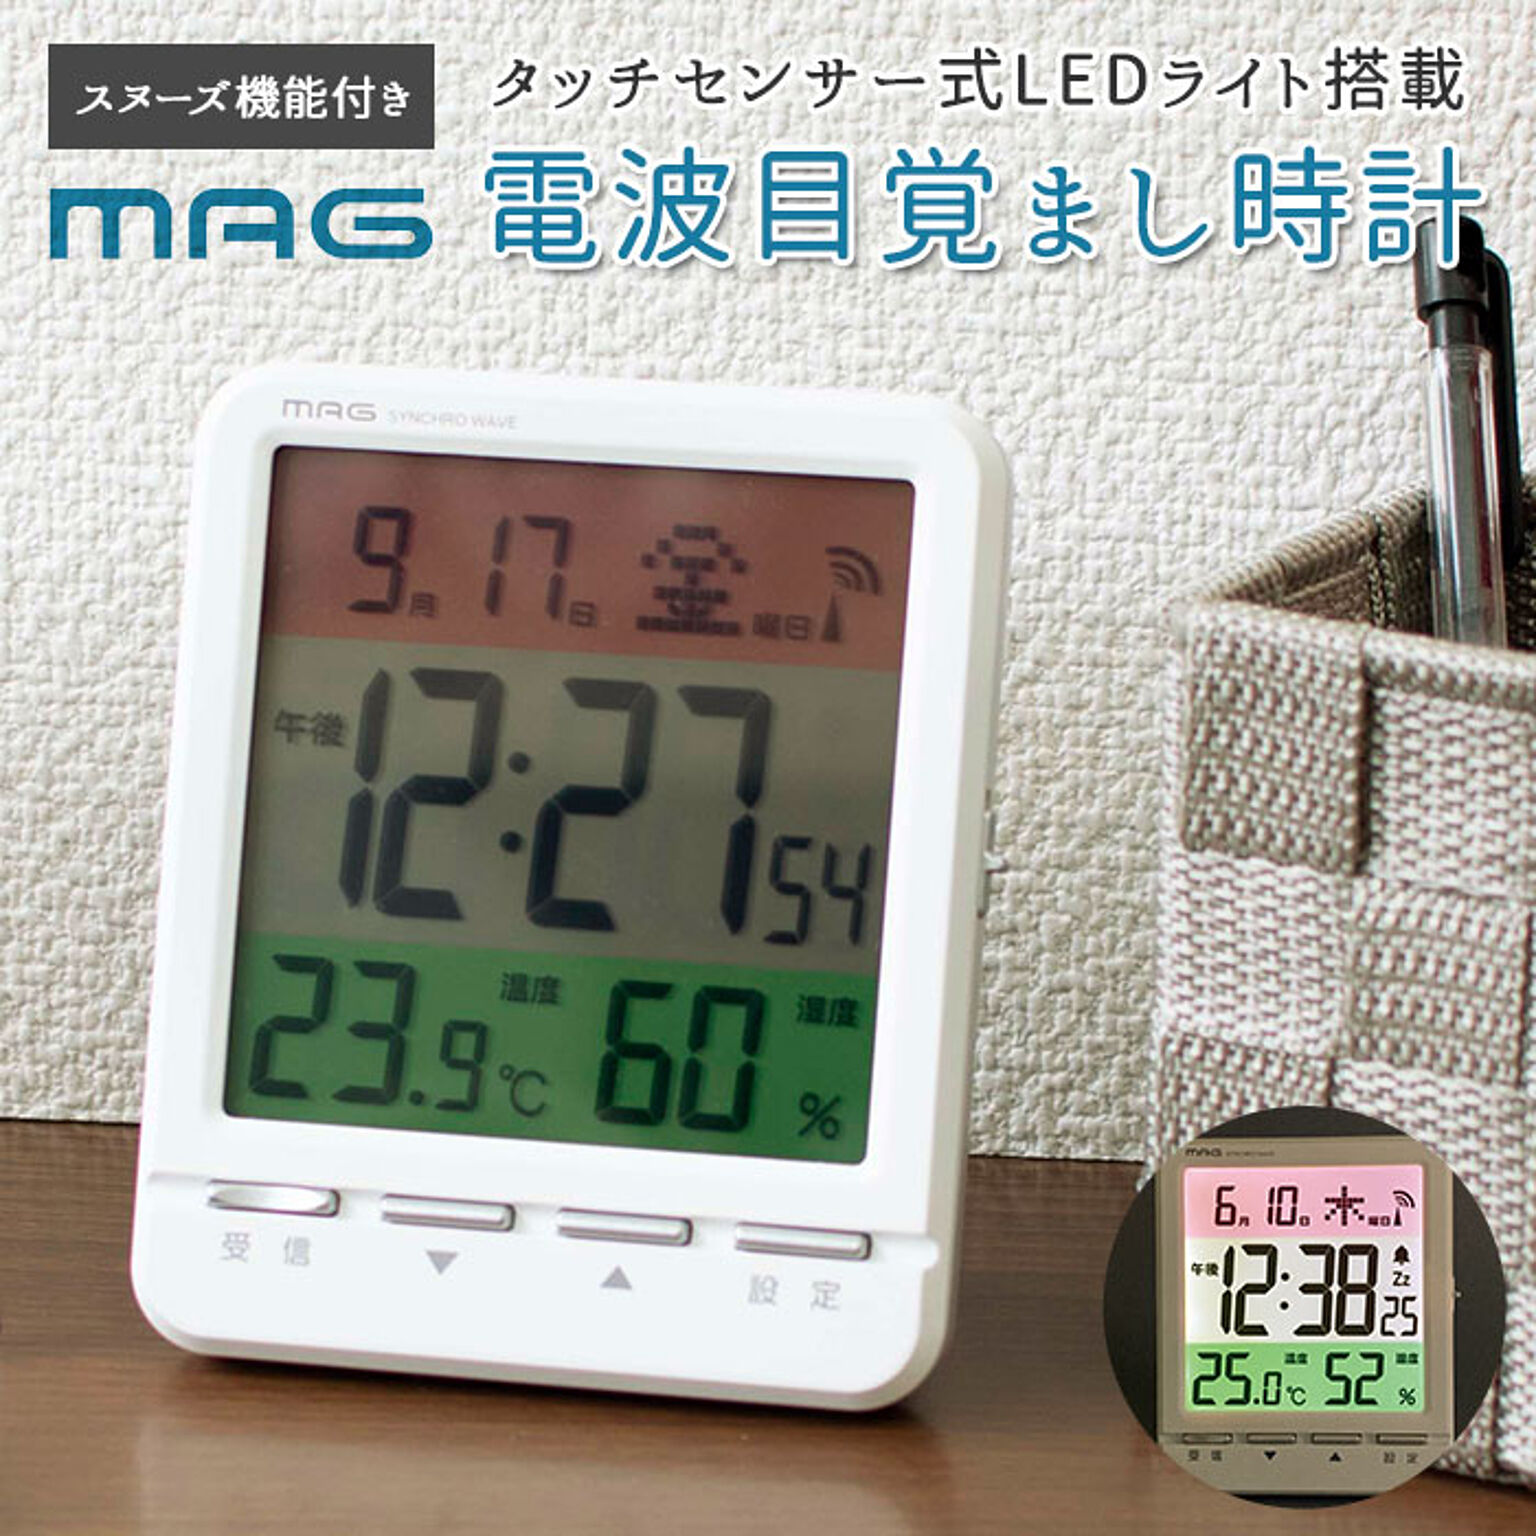 時計 電波 置時計 デジタル 置き時計 電波時計 デジタル時計 見やすい 3色カラー液晶 温度表示 温度計 湿度表示 湿度計 アラーム 電子音 スヌーズ タッチセンサー式ライト カレンダー表示 